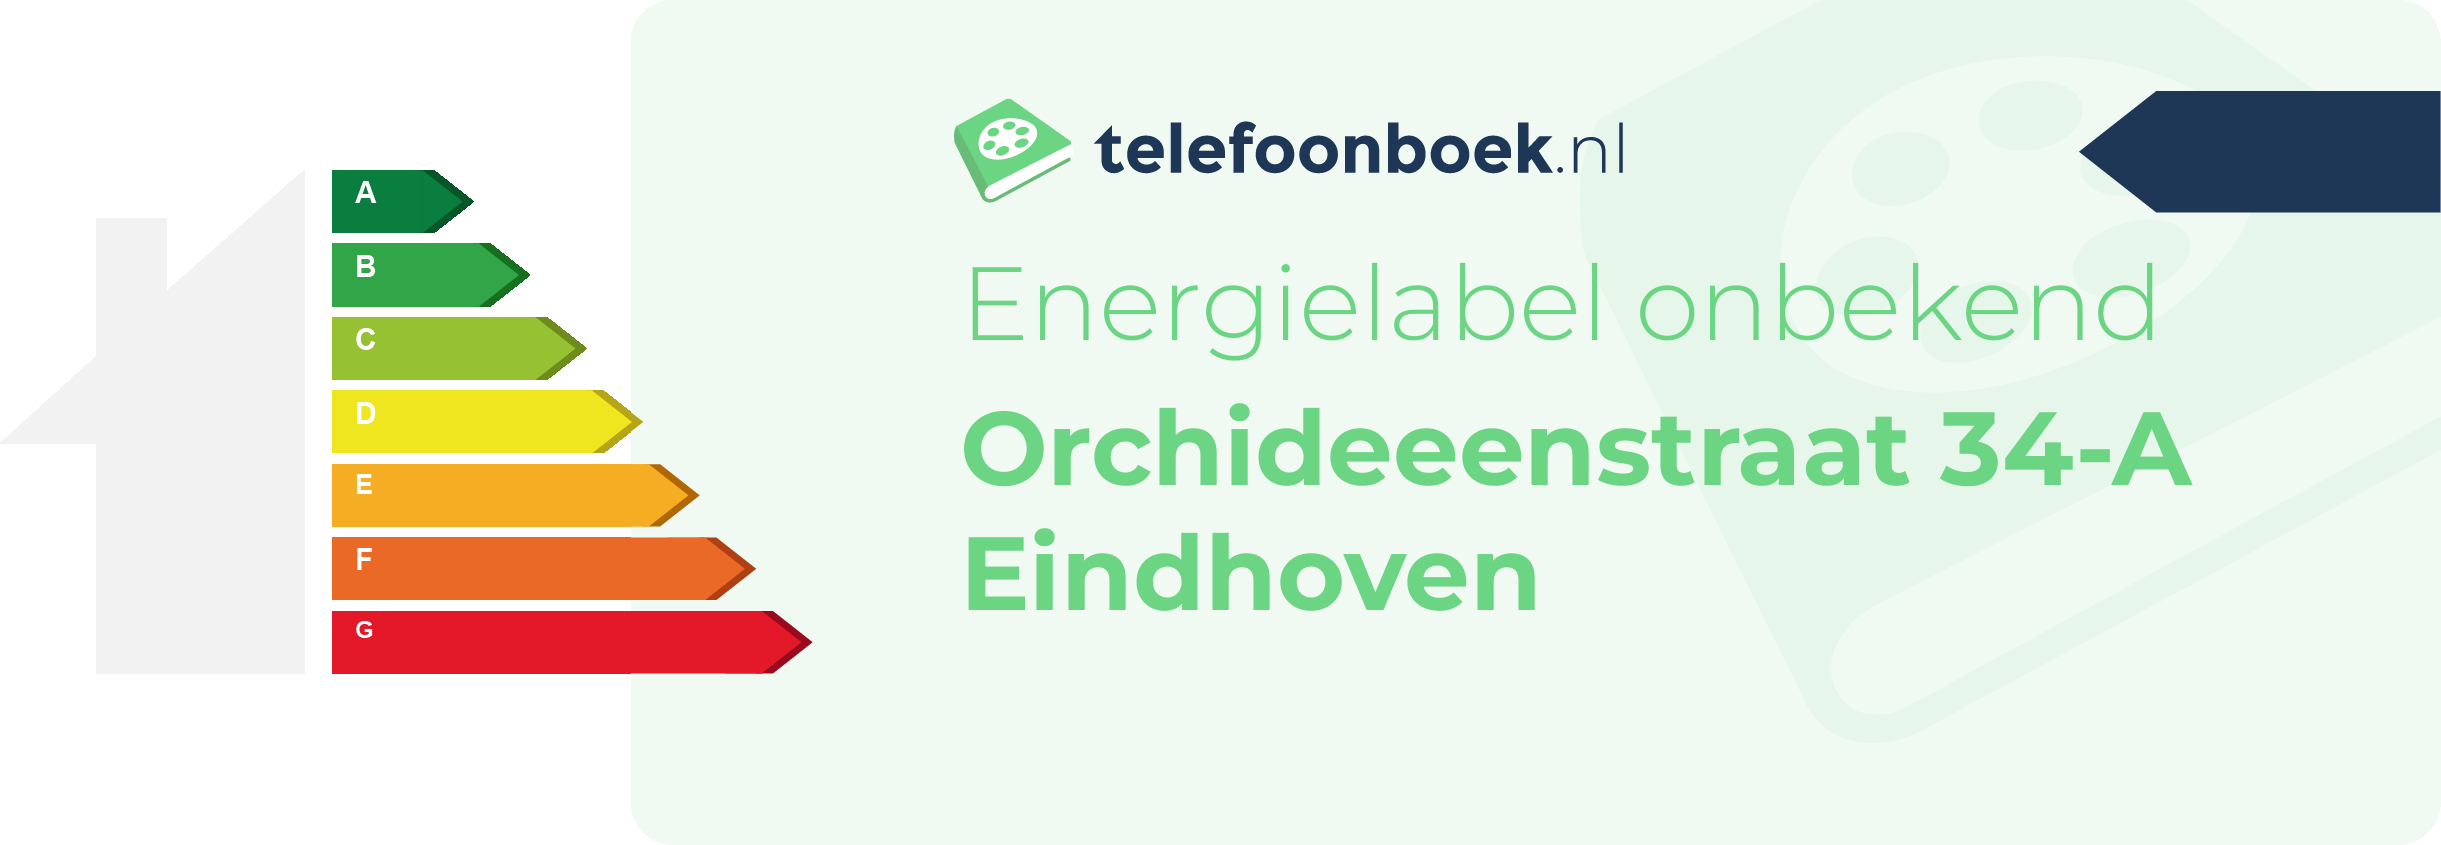 Energielabel Orchideeenstraat 34-A Eindhoven